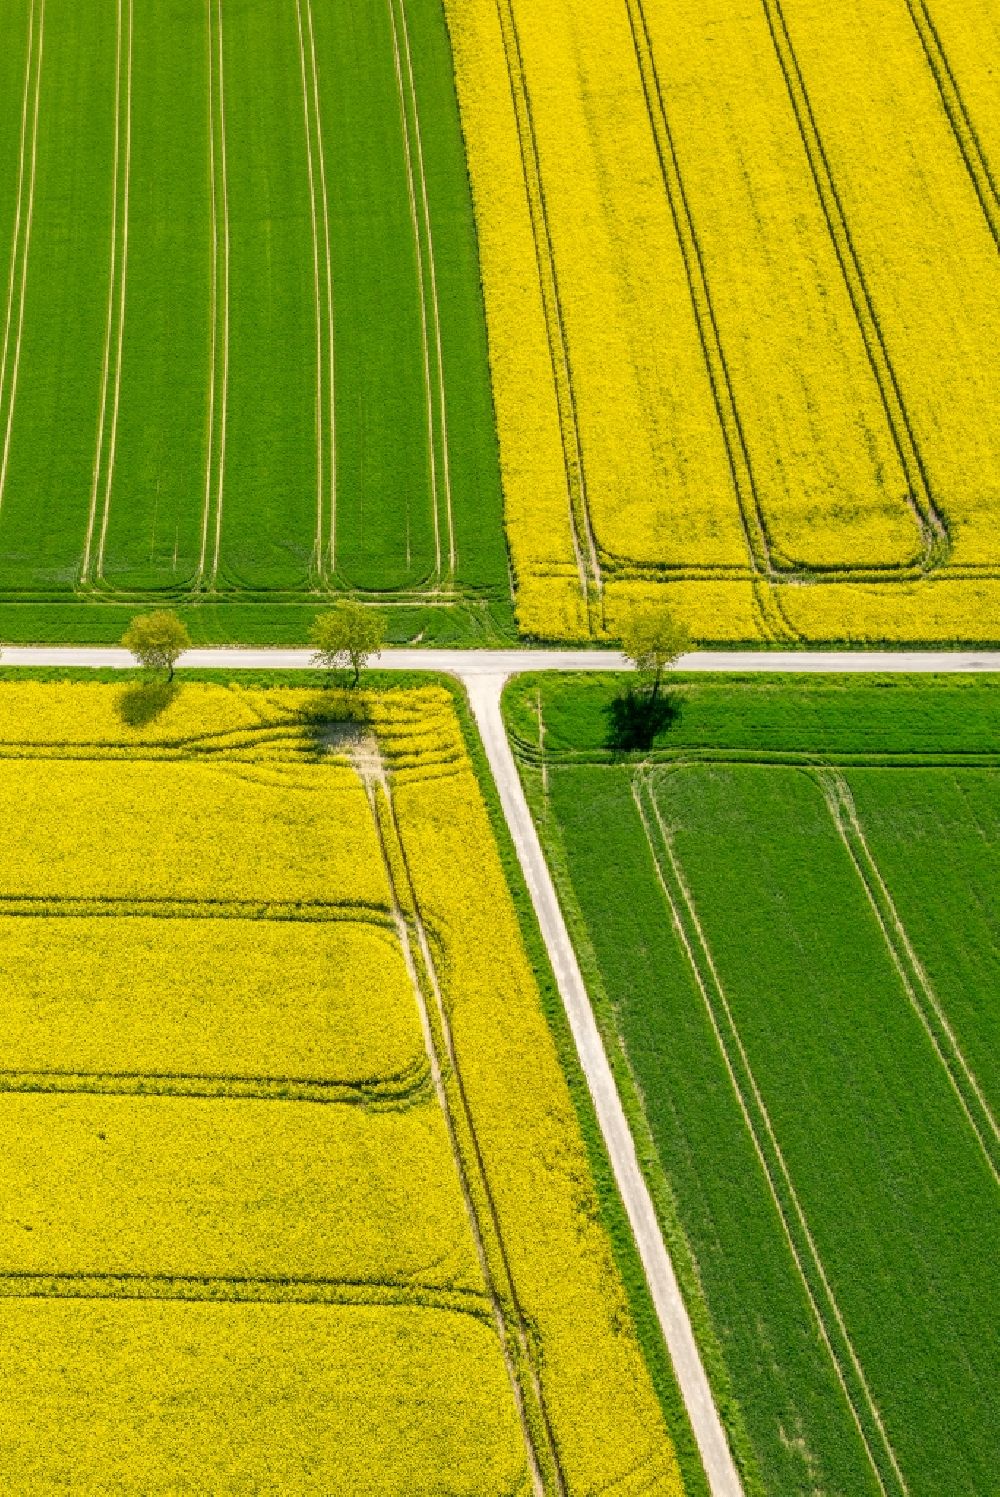 Belecke aus der Vogelperspektive: Feld- Landschaft gelb blühender Raps- Blüten in Belecke im Bundesland Nordrhein-Westfalen, Deutschland